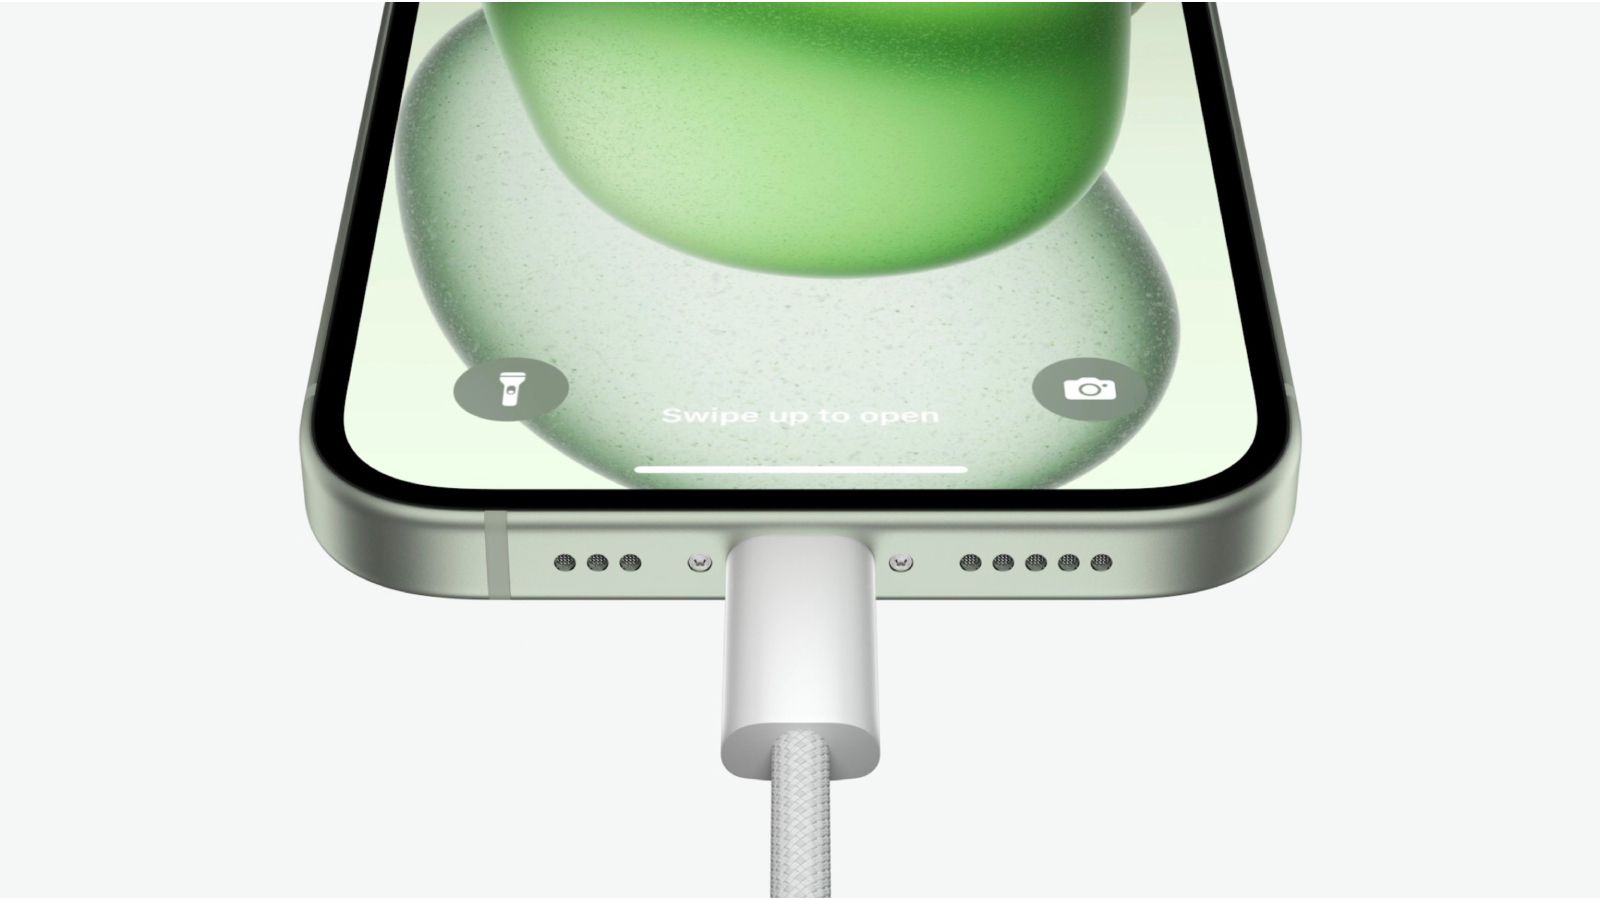 Según los informes, los modelos de iPhone 15 Pro alcanzan una velocidad de carga máxima de 27 W a pesar de los rumores de 35 W